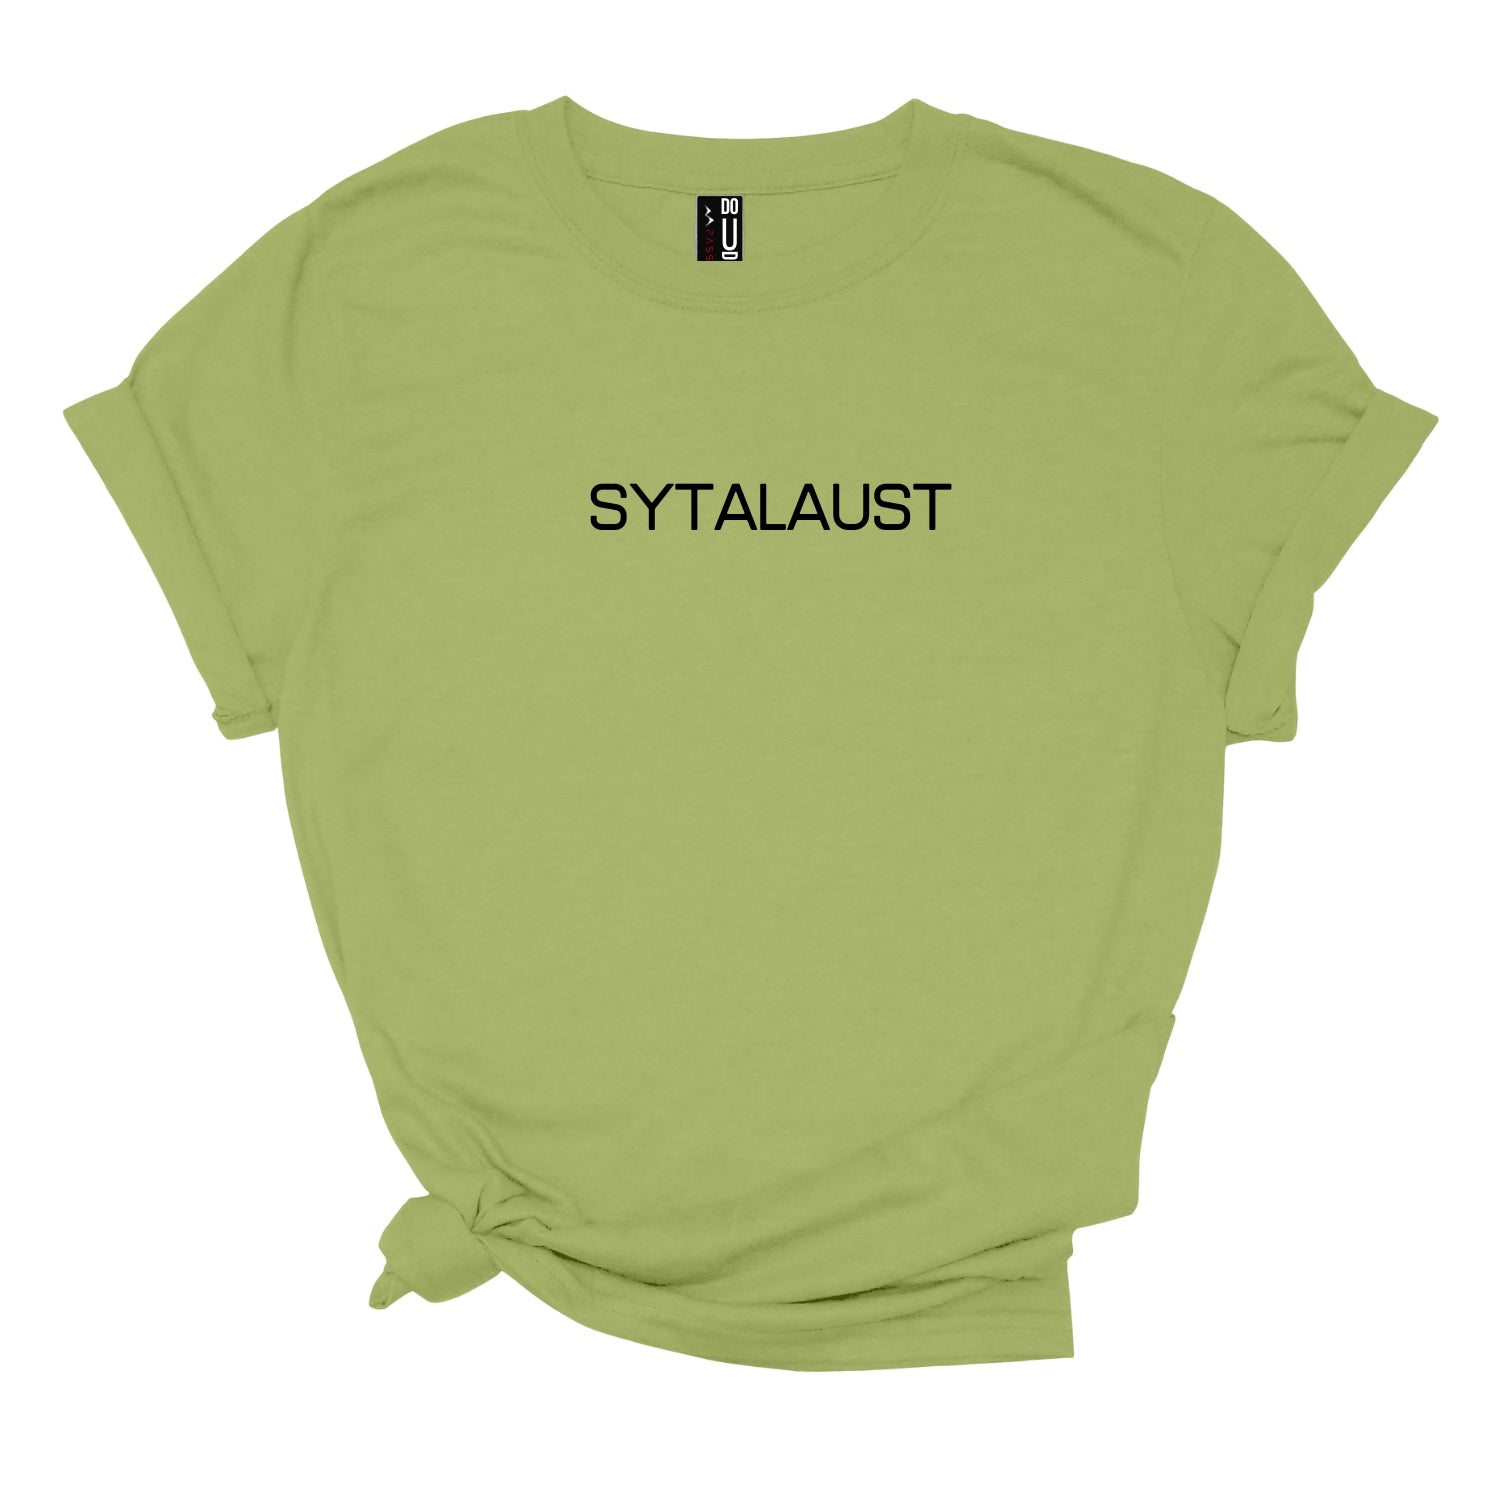 SYTALAUST Sunnmørs TEE t-skjorte i dame modell med Sunnmørs-sitat og uttrykk - DoUdare